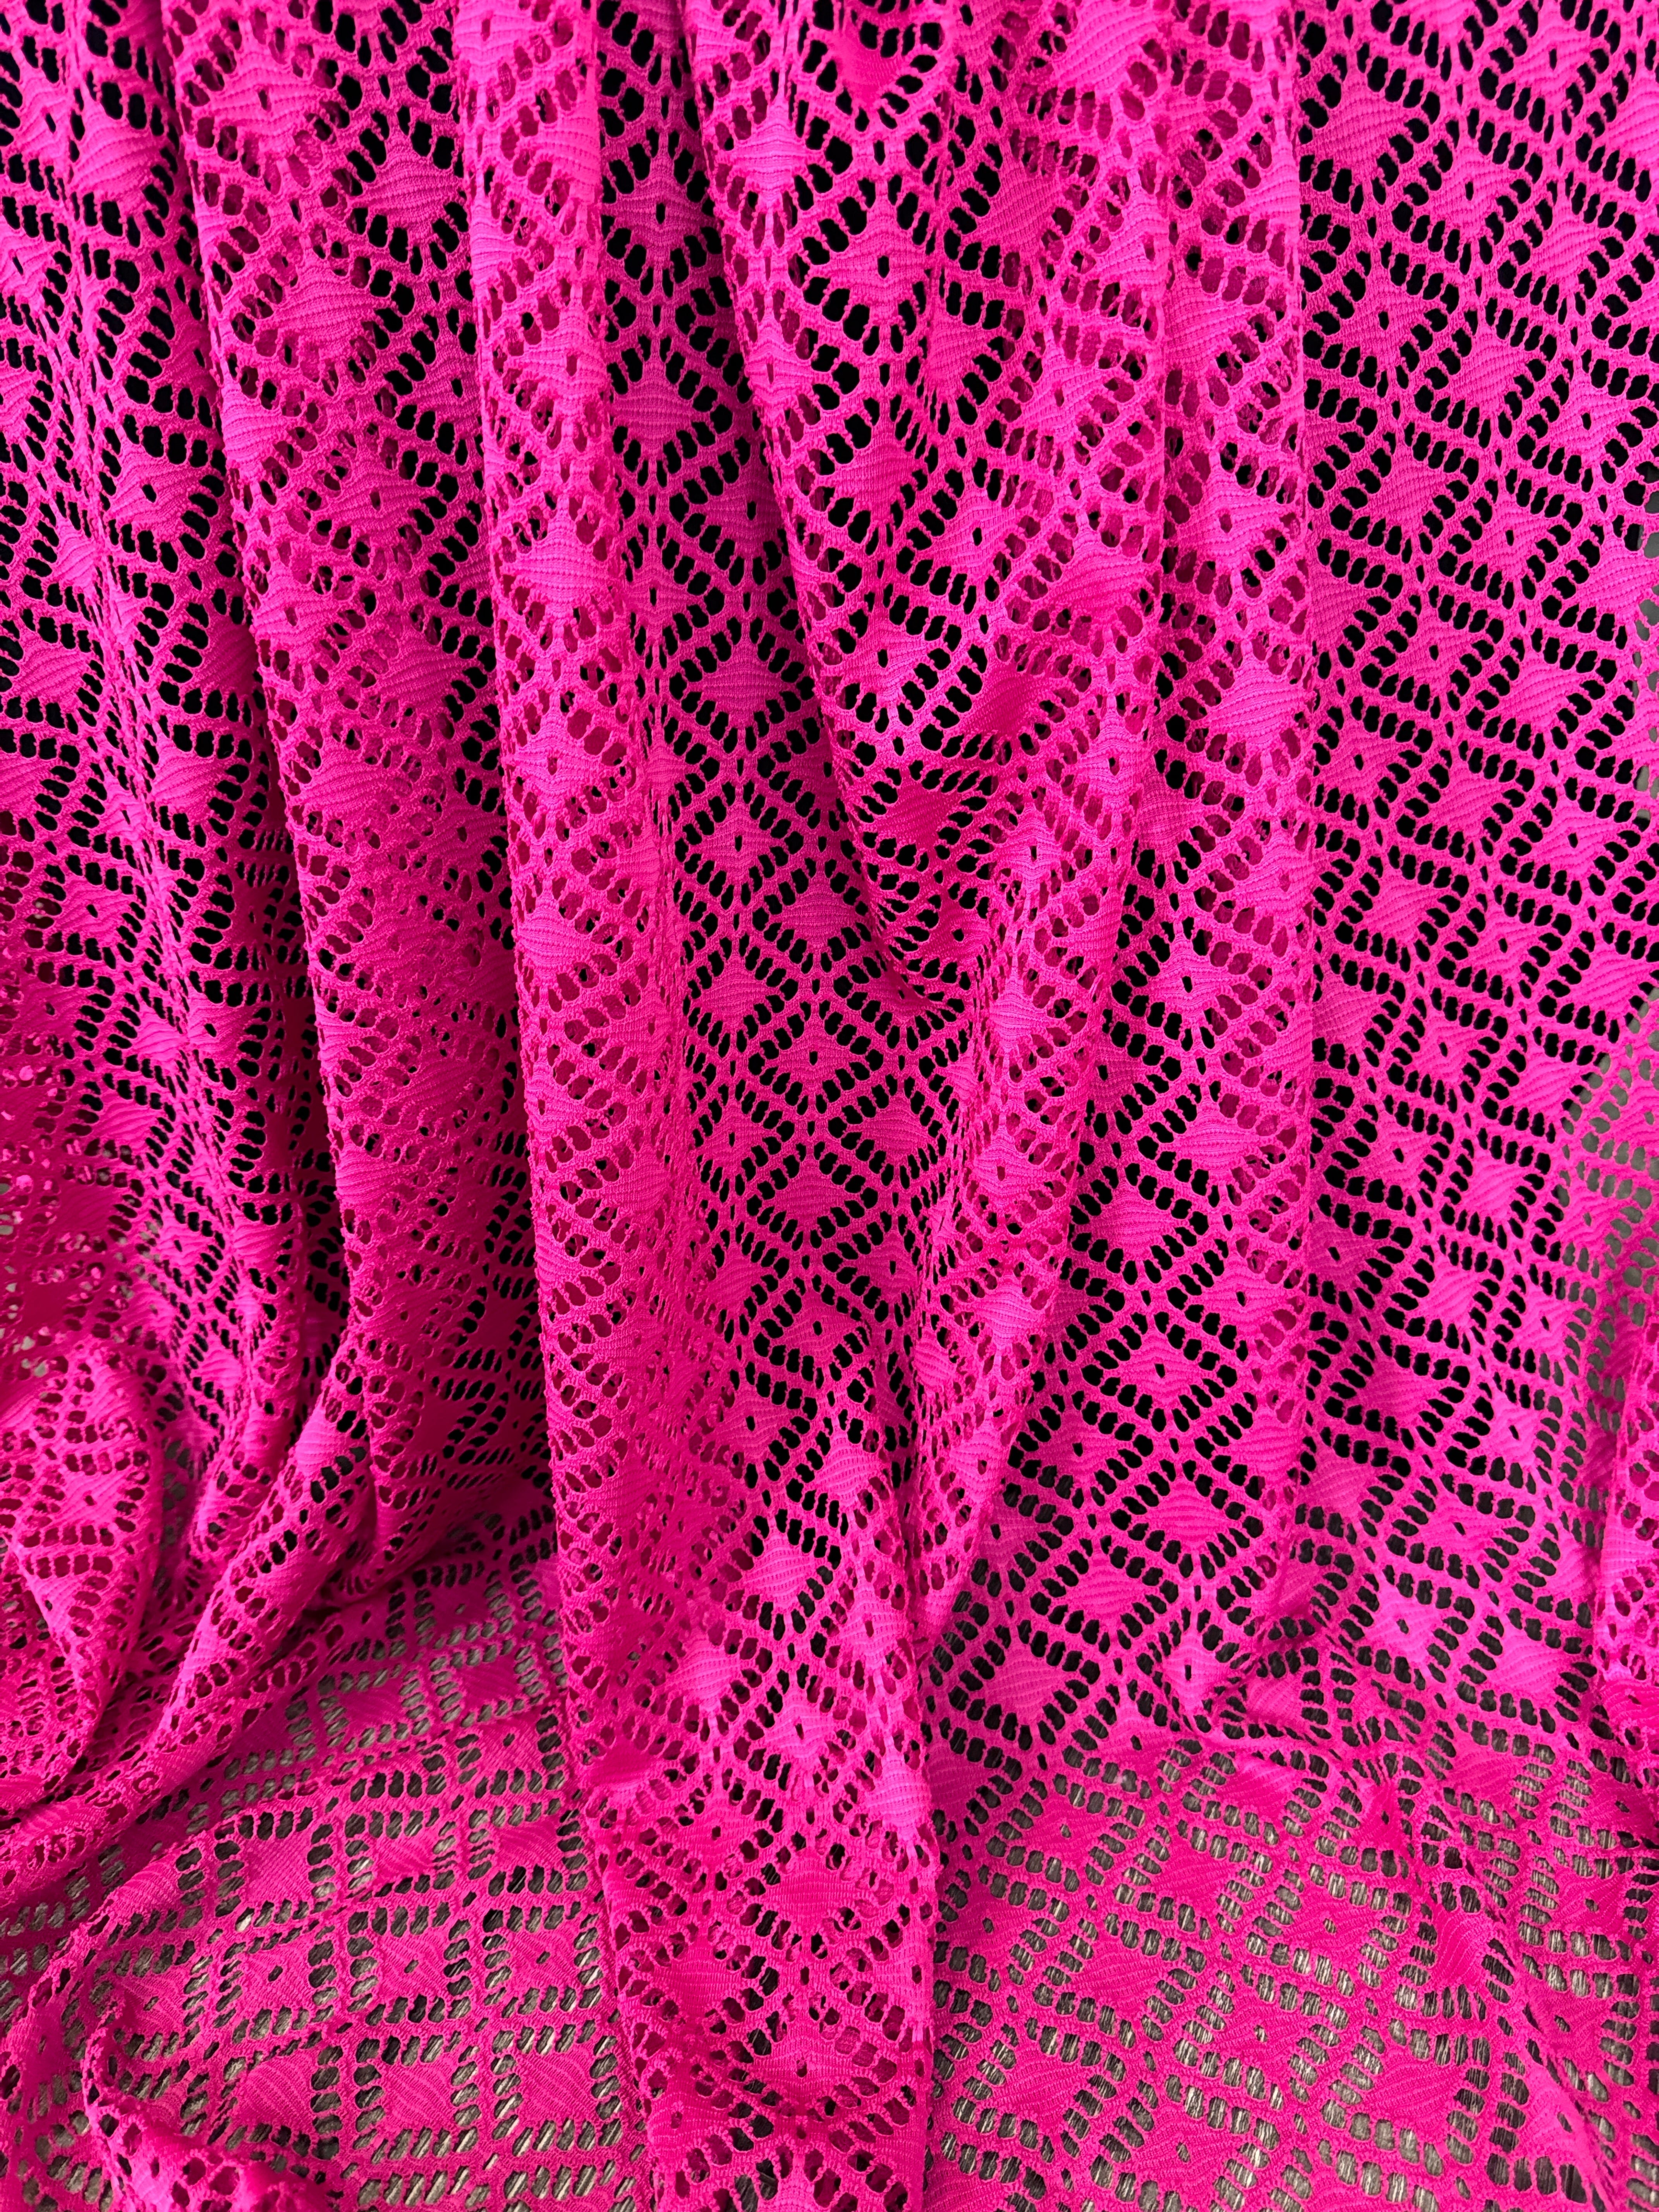 Hot Pink Crochet Hollow Out Knit, pink Crochet Hollow Out Knit, dark pink Crochet Hollow Out Knit, light pink Crochet Hollow Out Knit, fuchsia Crochet Hollow Out Knit, Crochet Hollow Out Knit on discount